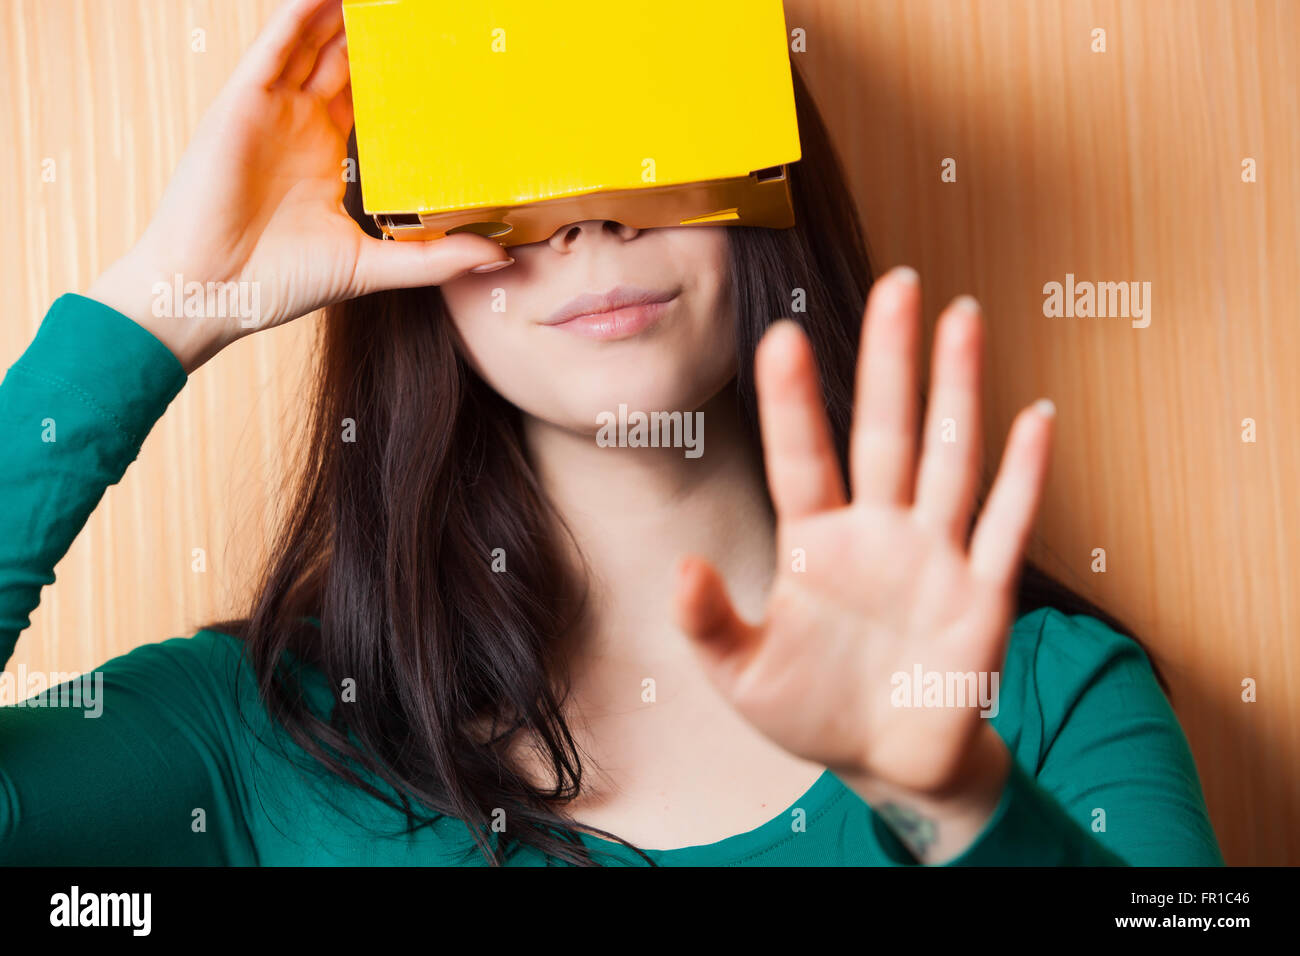 Casco de realidad aumentada de cartón liso le permite entrar en el jugar juegos de vídeo en su smartphone en un estilo innovador Foto de stock